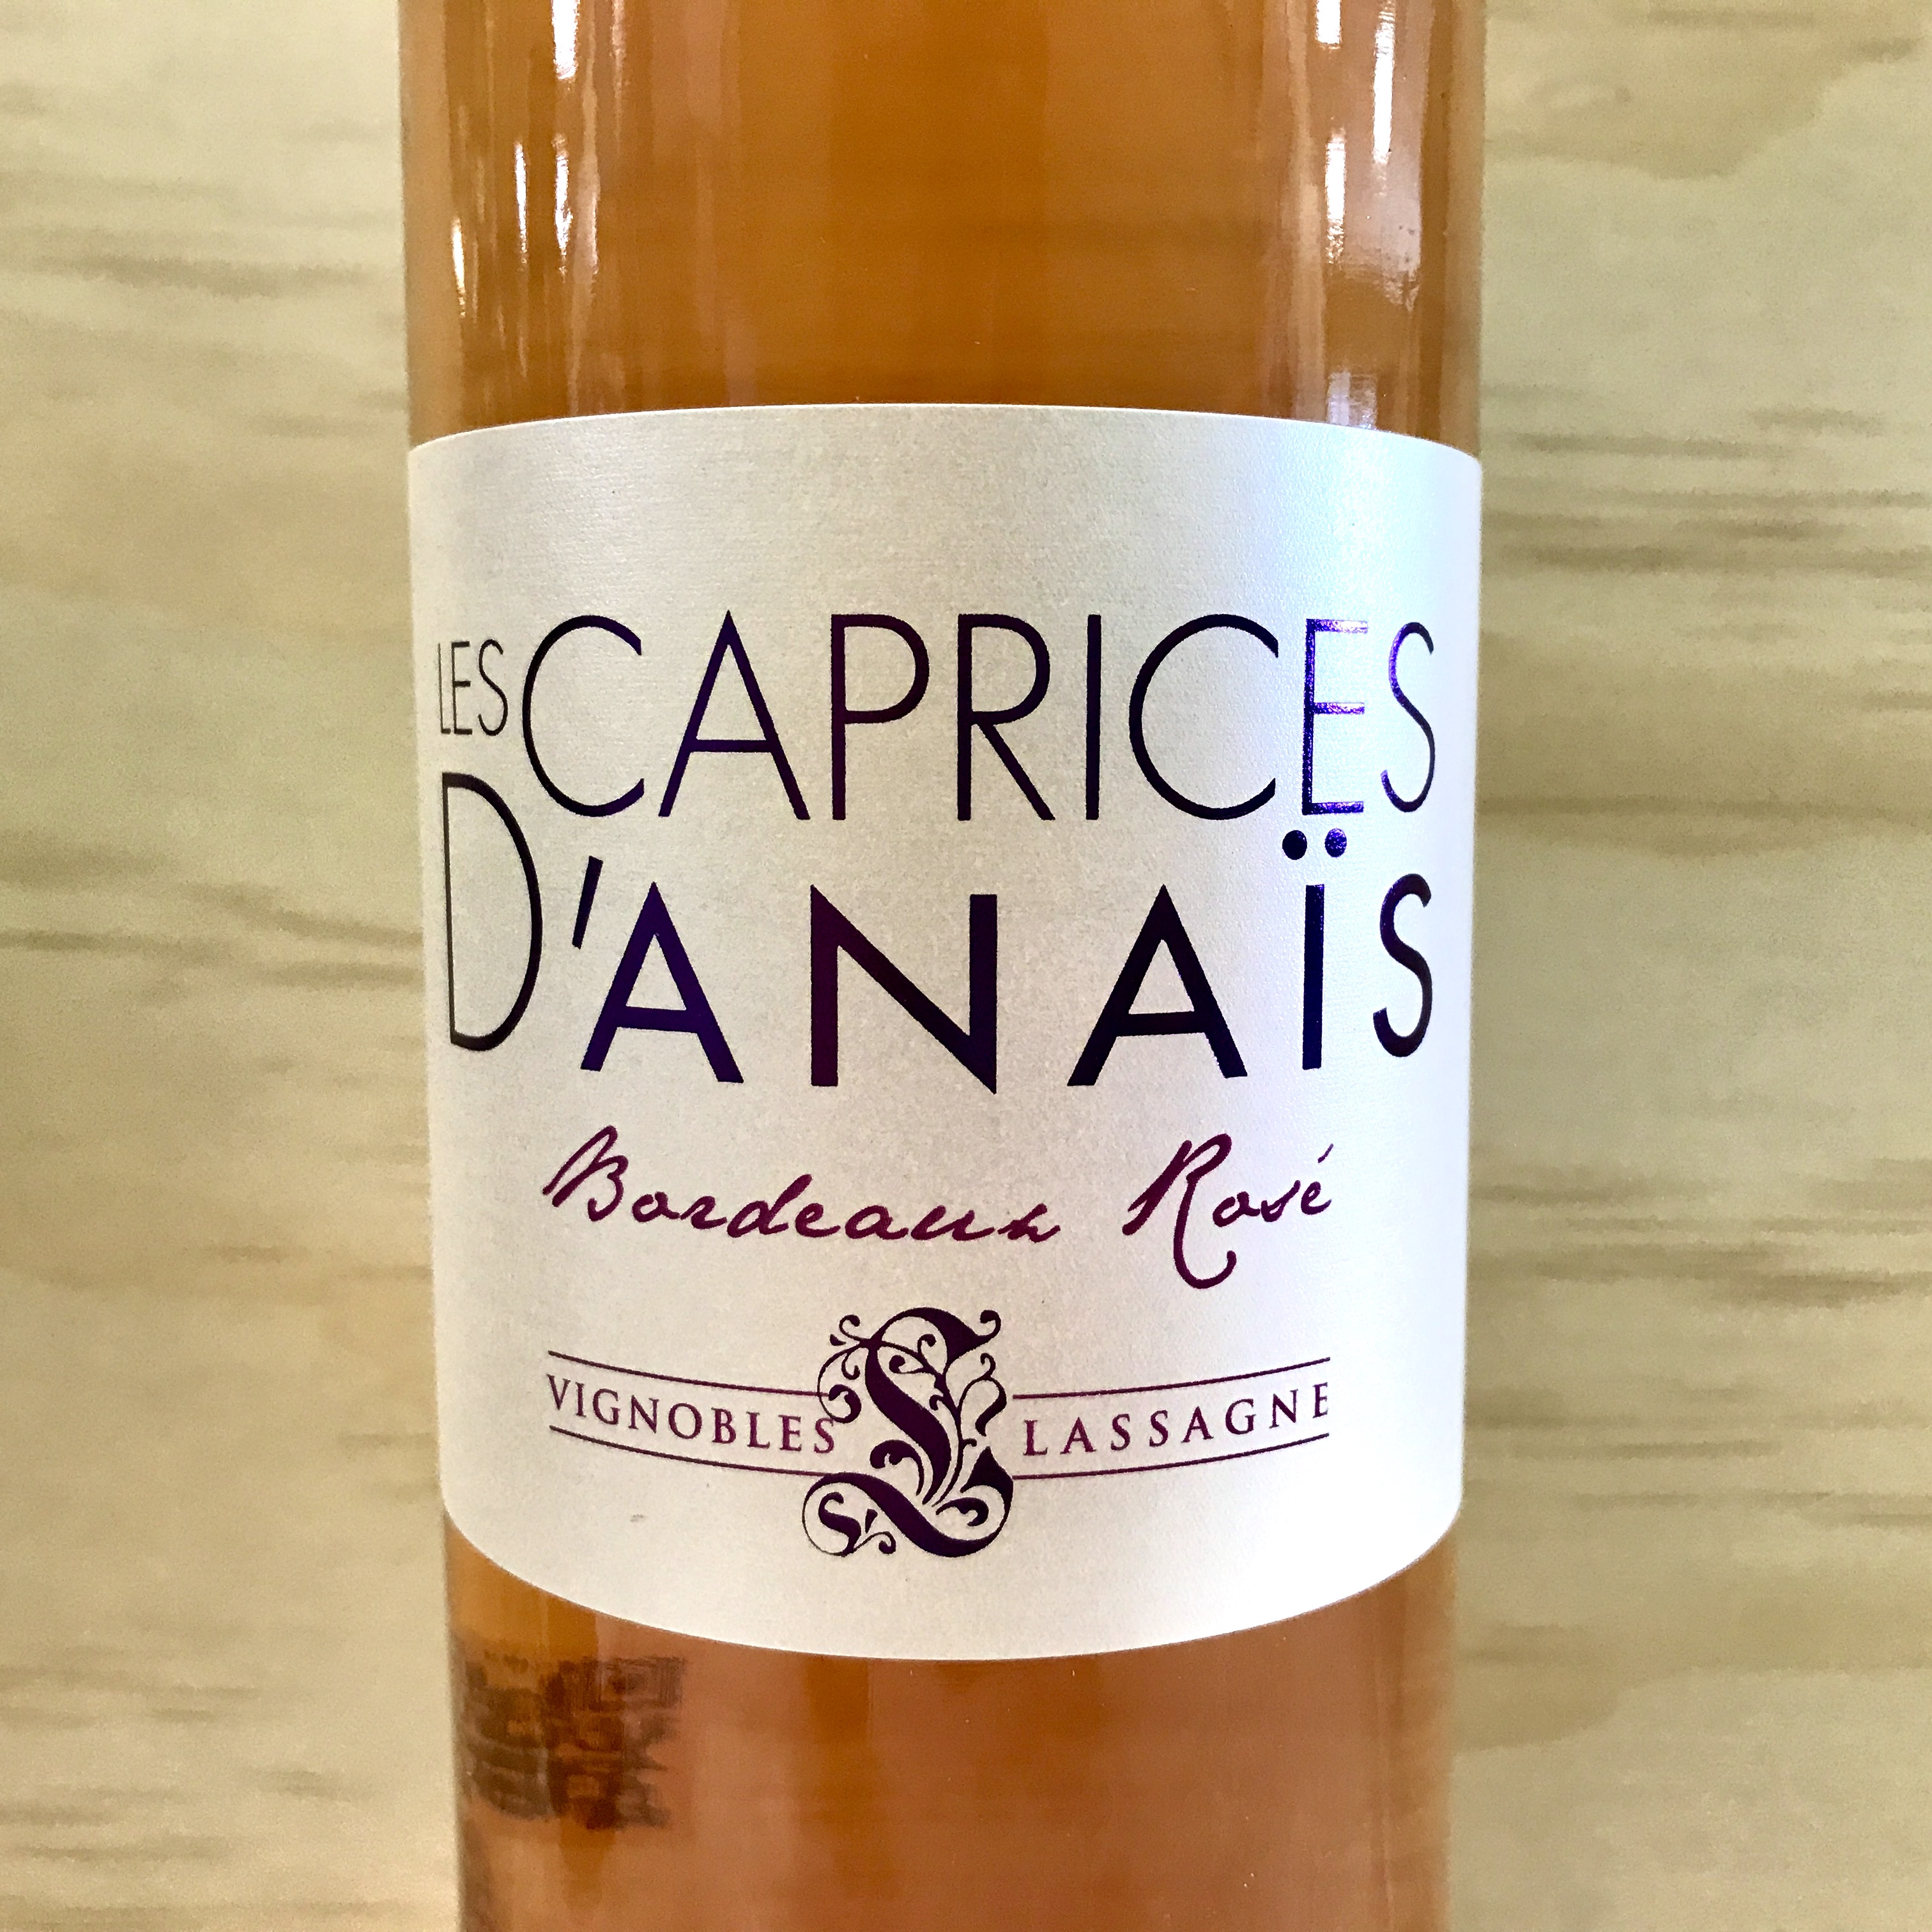 Les Caprices D'Annais rose Bordeaux 2019